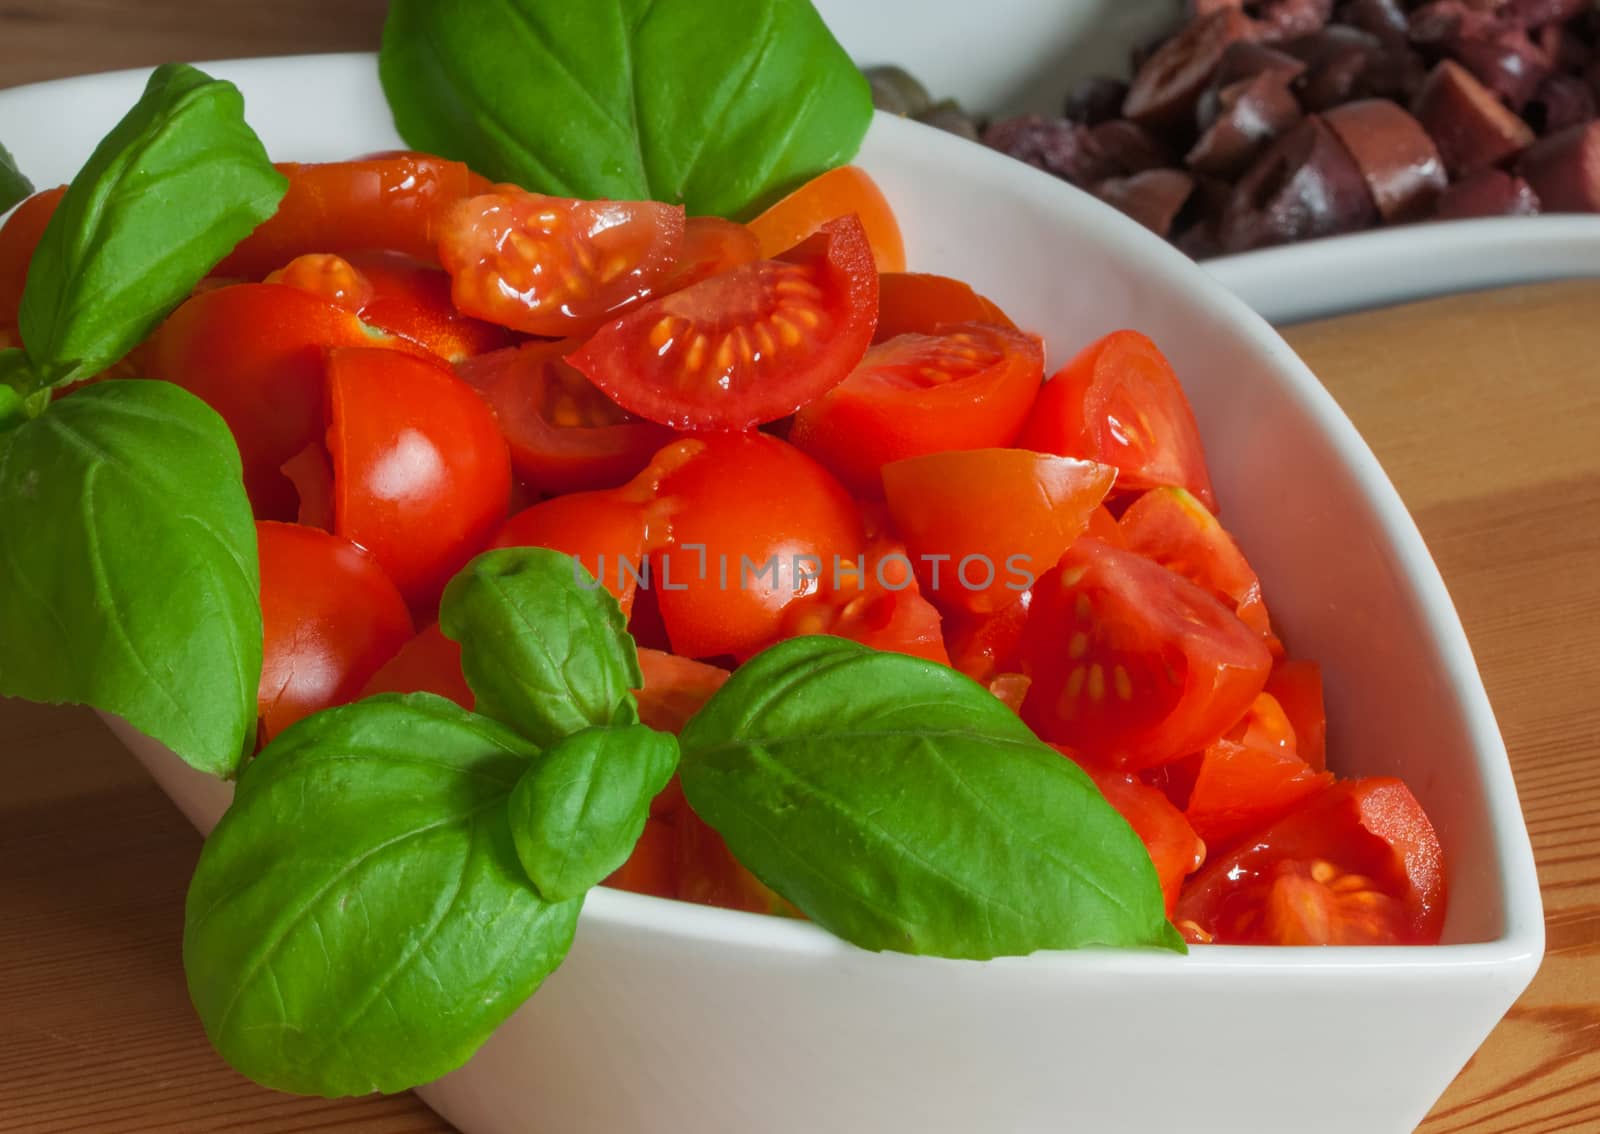 Ingredients of Mediterranean cuisine by easyclickshop